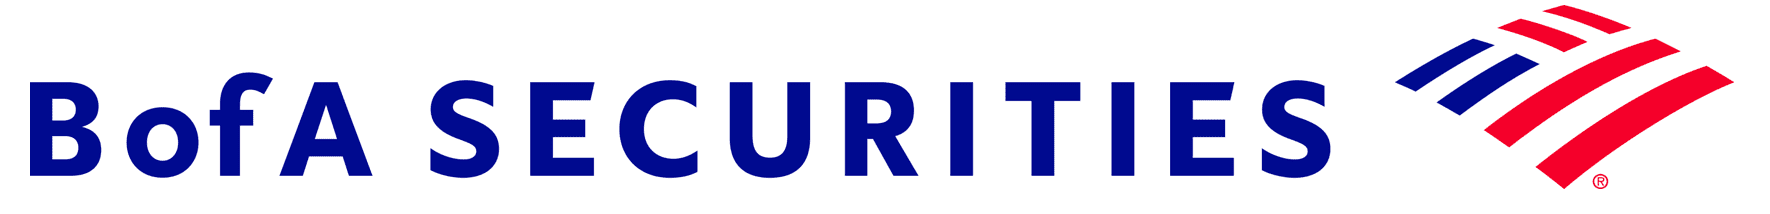 B of A Securities logo